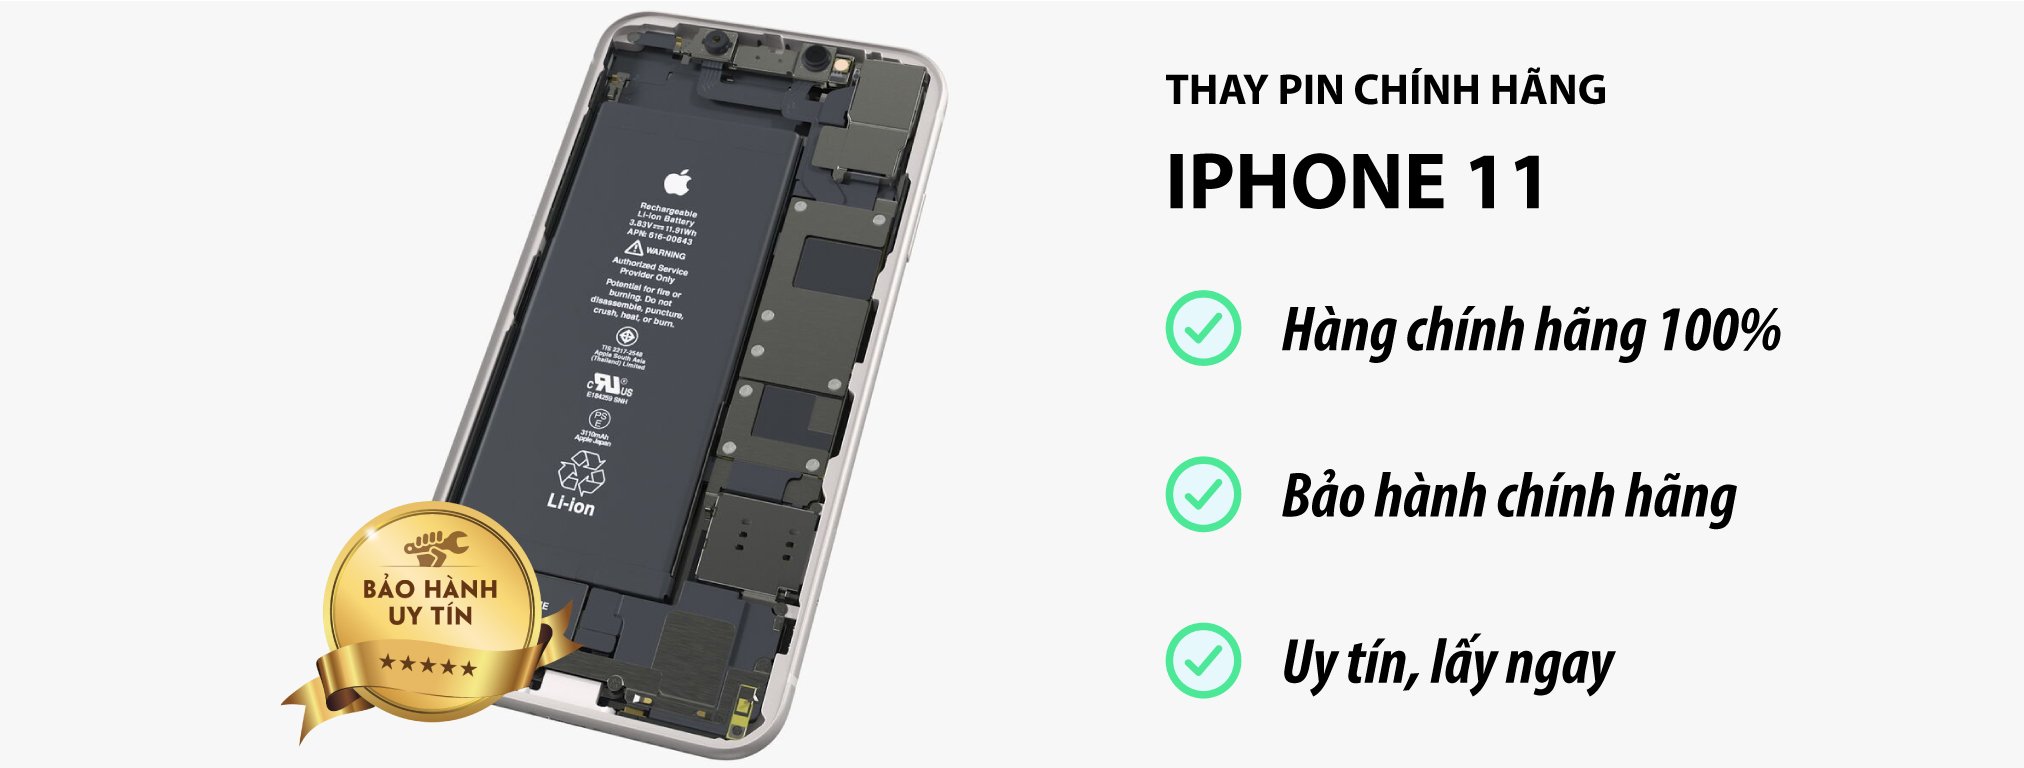 thay pin iPhone 11 chinh hang tai Ha Noi